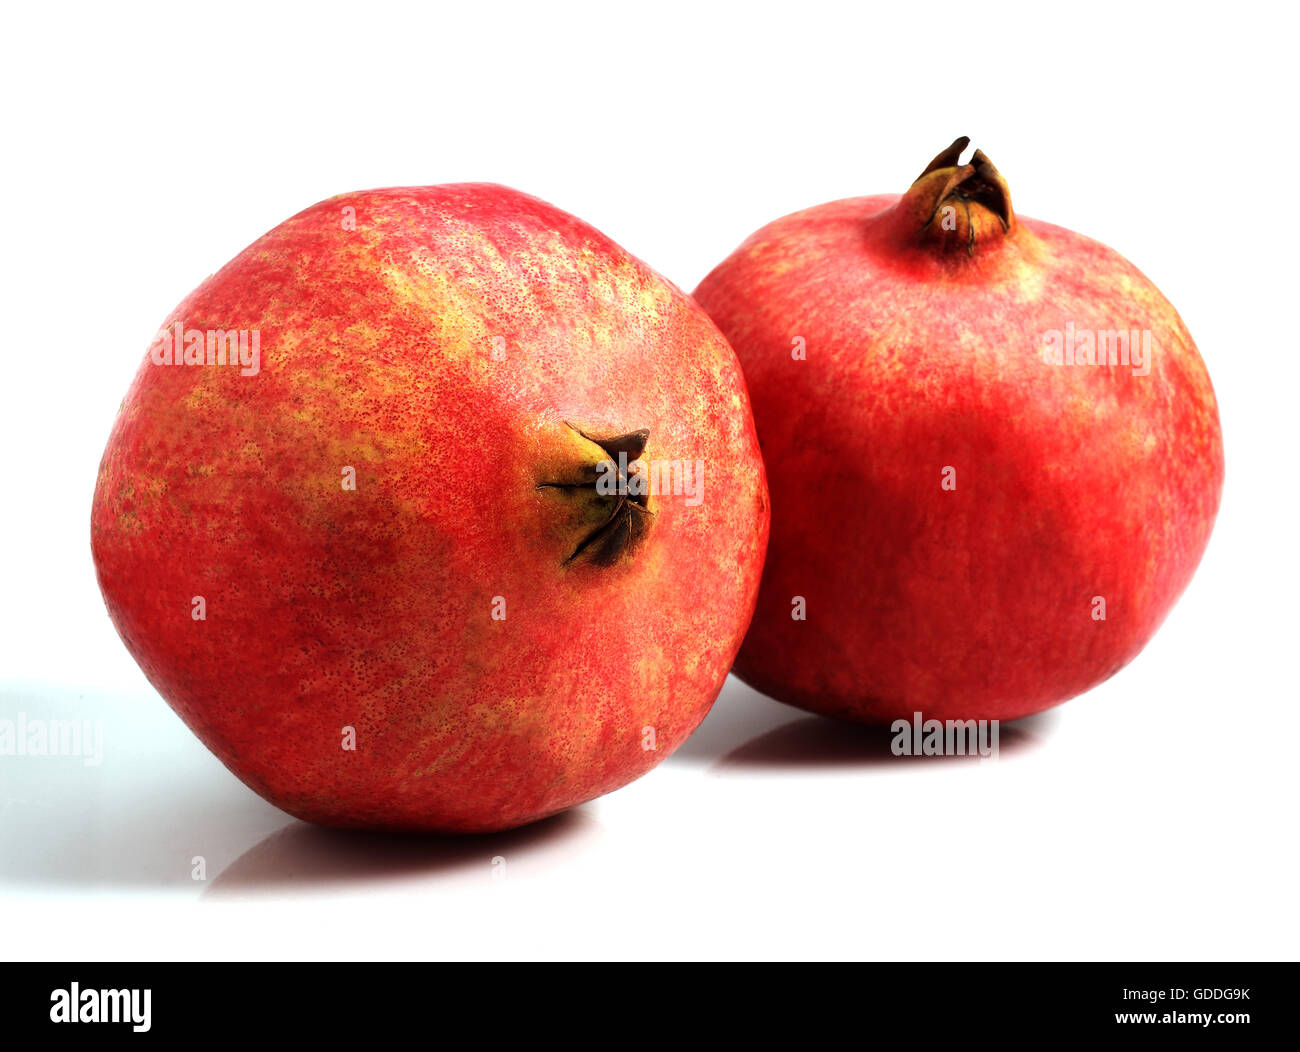 Pomegranata Fruit, punica granatum against White Background Stock Photo